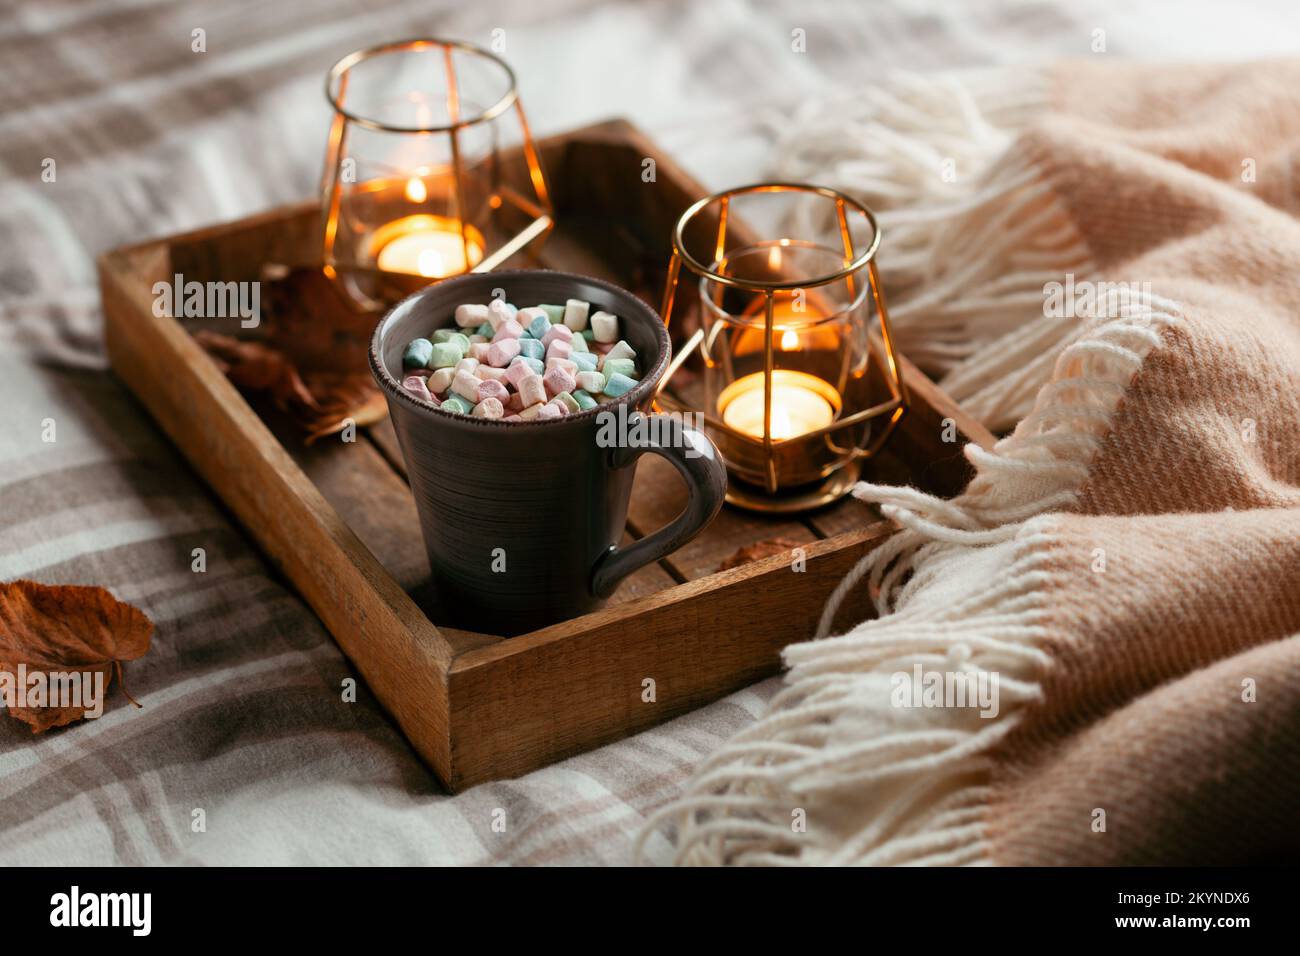 chambre chaleureuse et confortable concept hiver ou automne, tasse de chocolat chaud sur plateau, bougies Banque D'Images